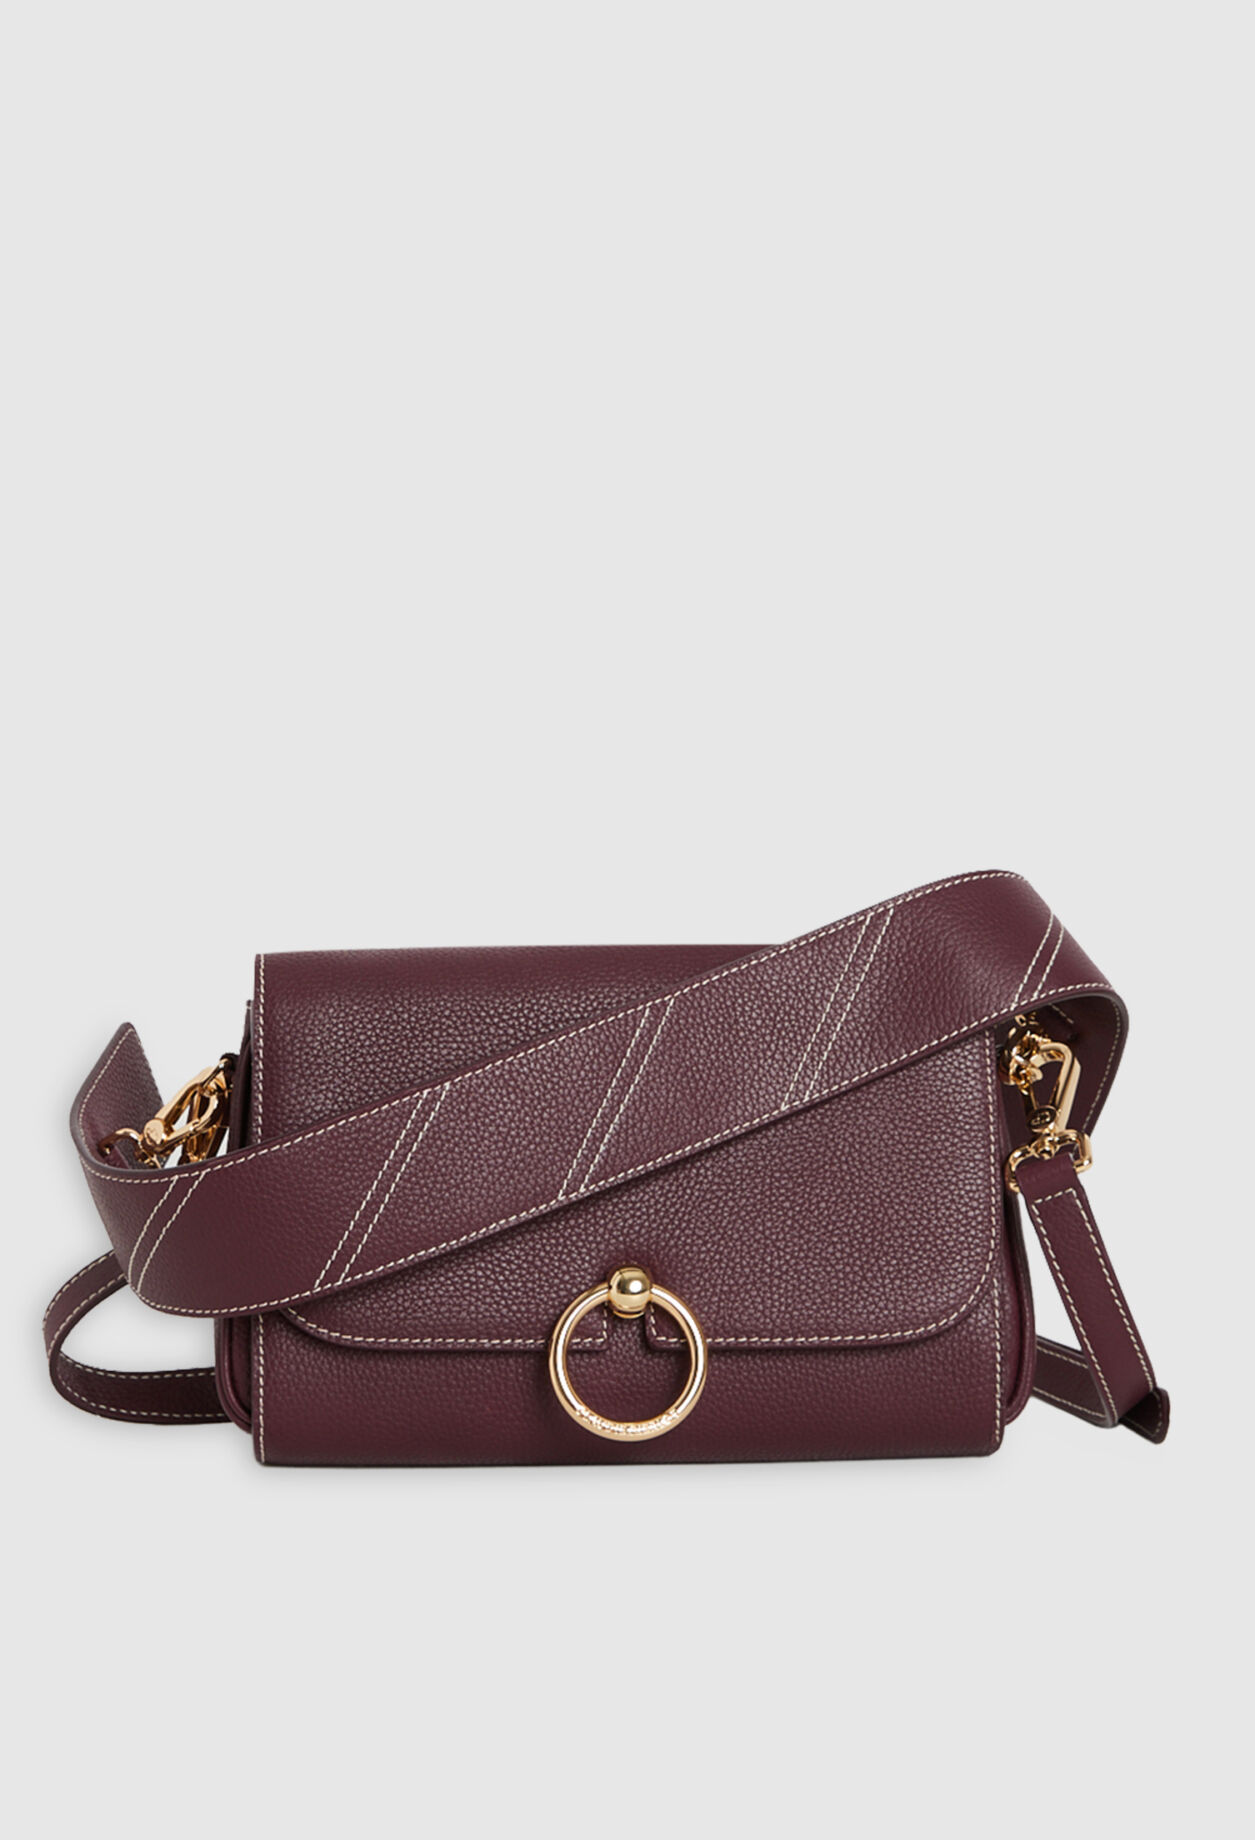 Leather burgundy shoulder bag